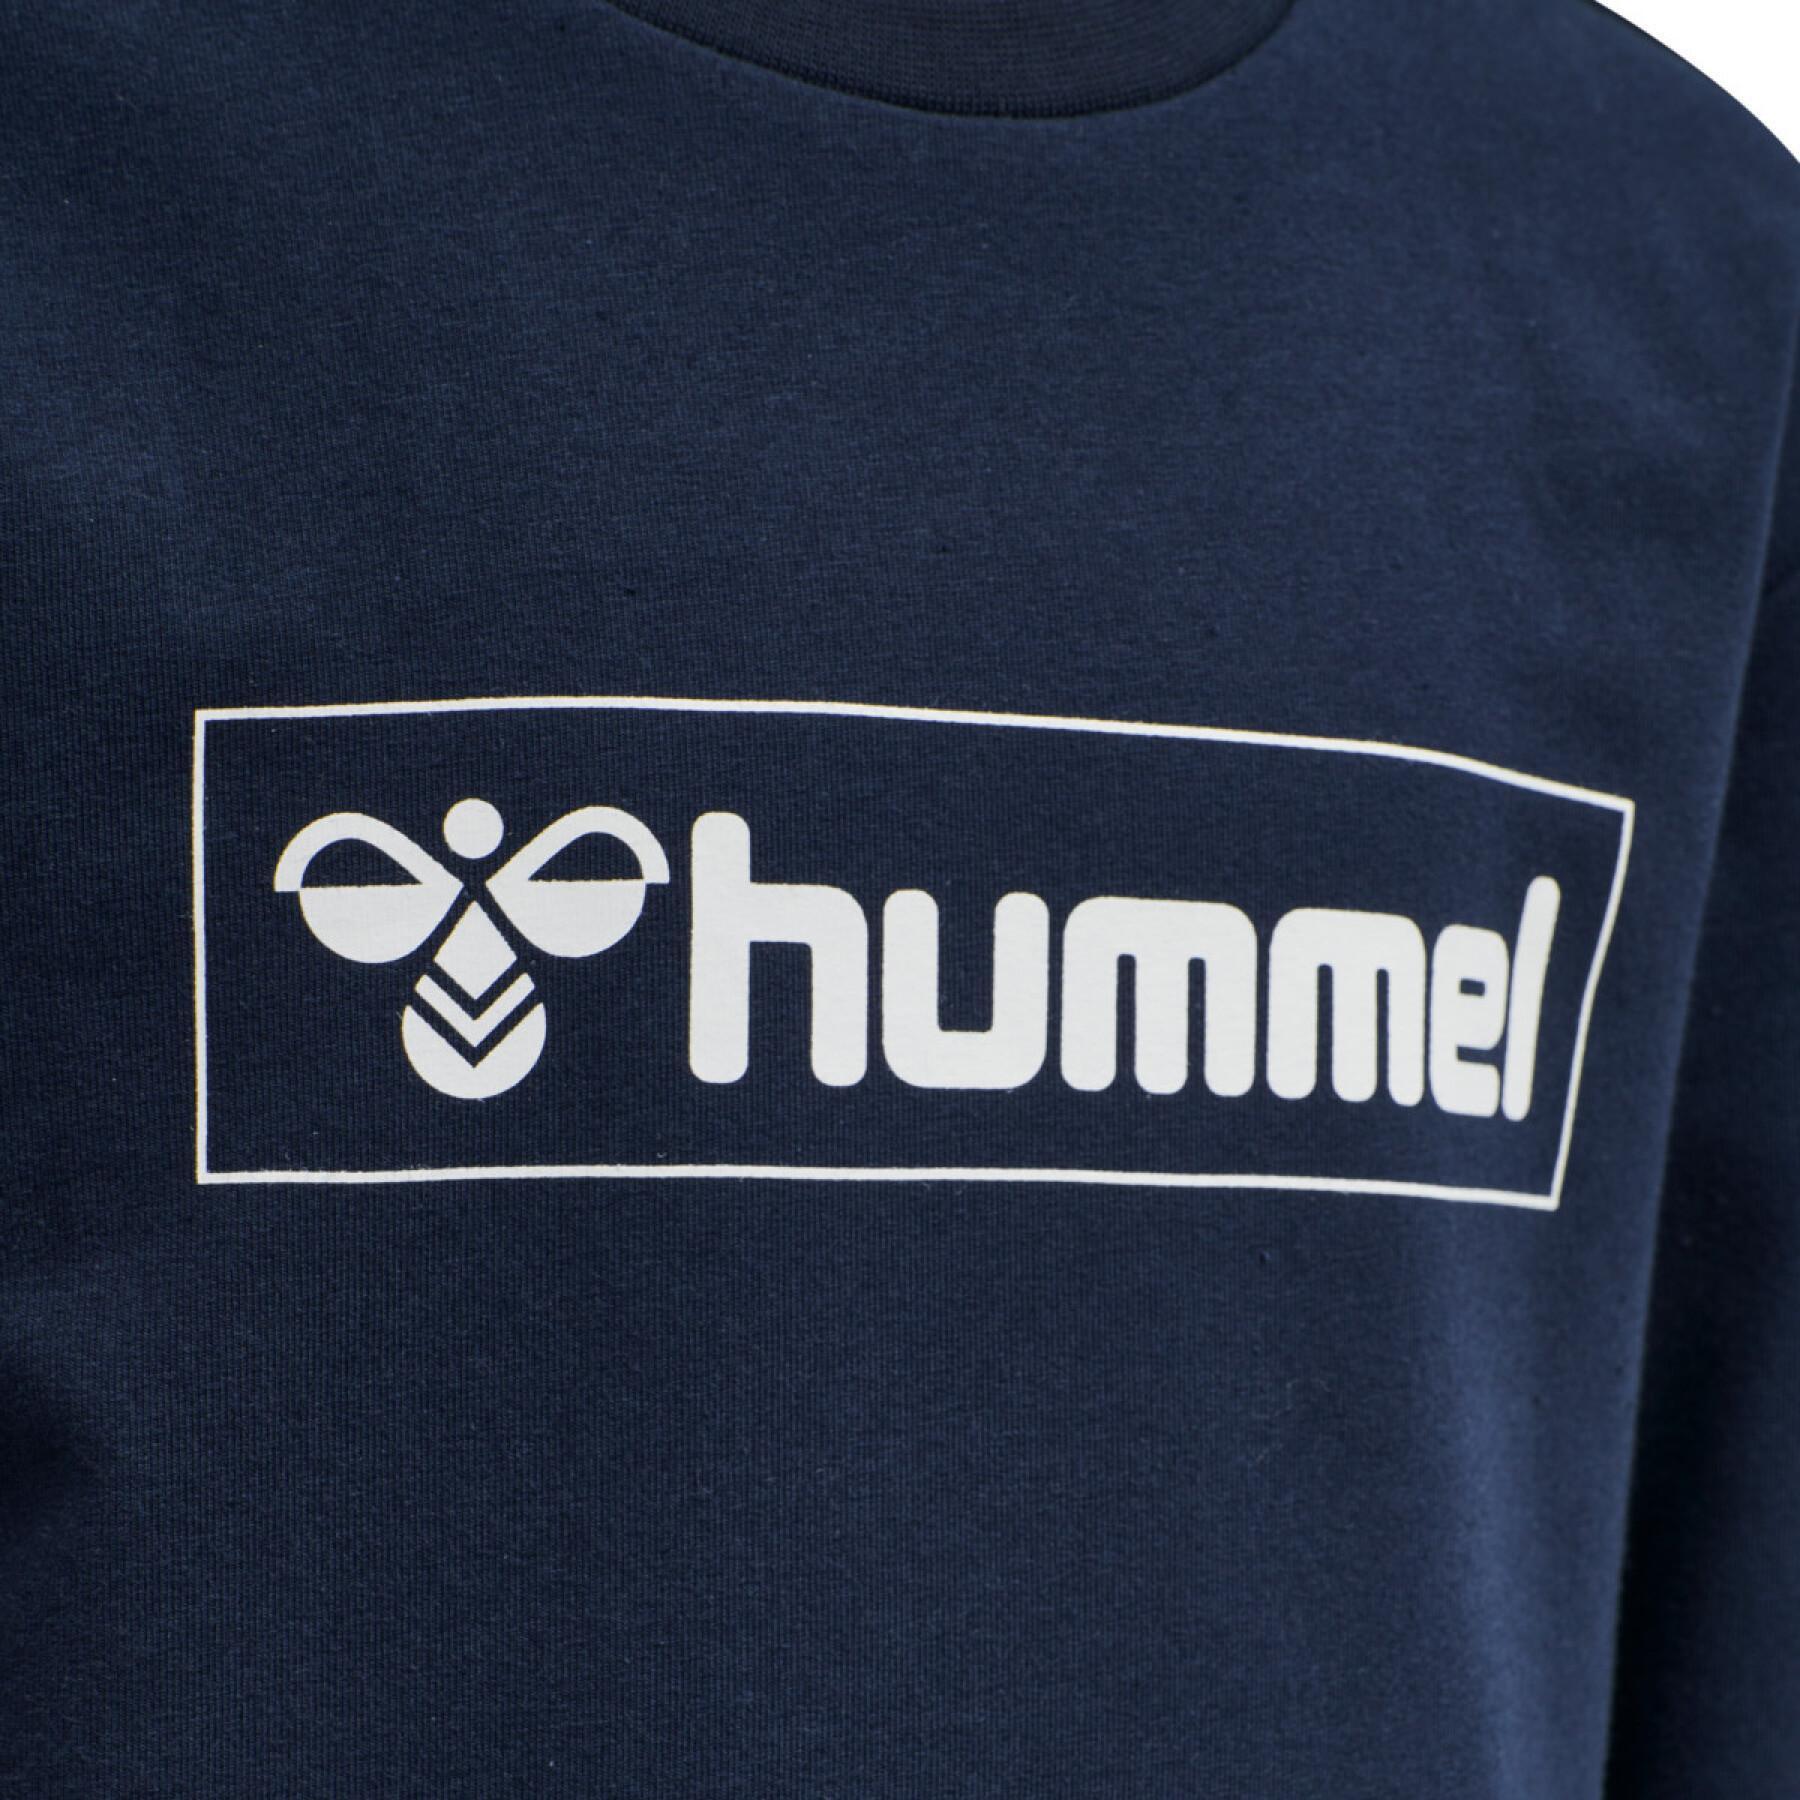 Sweatshirt child Hummel hmlBOX